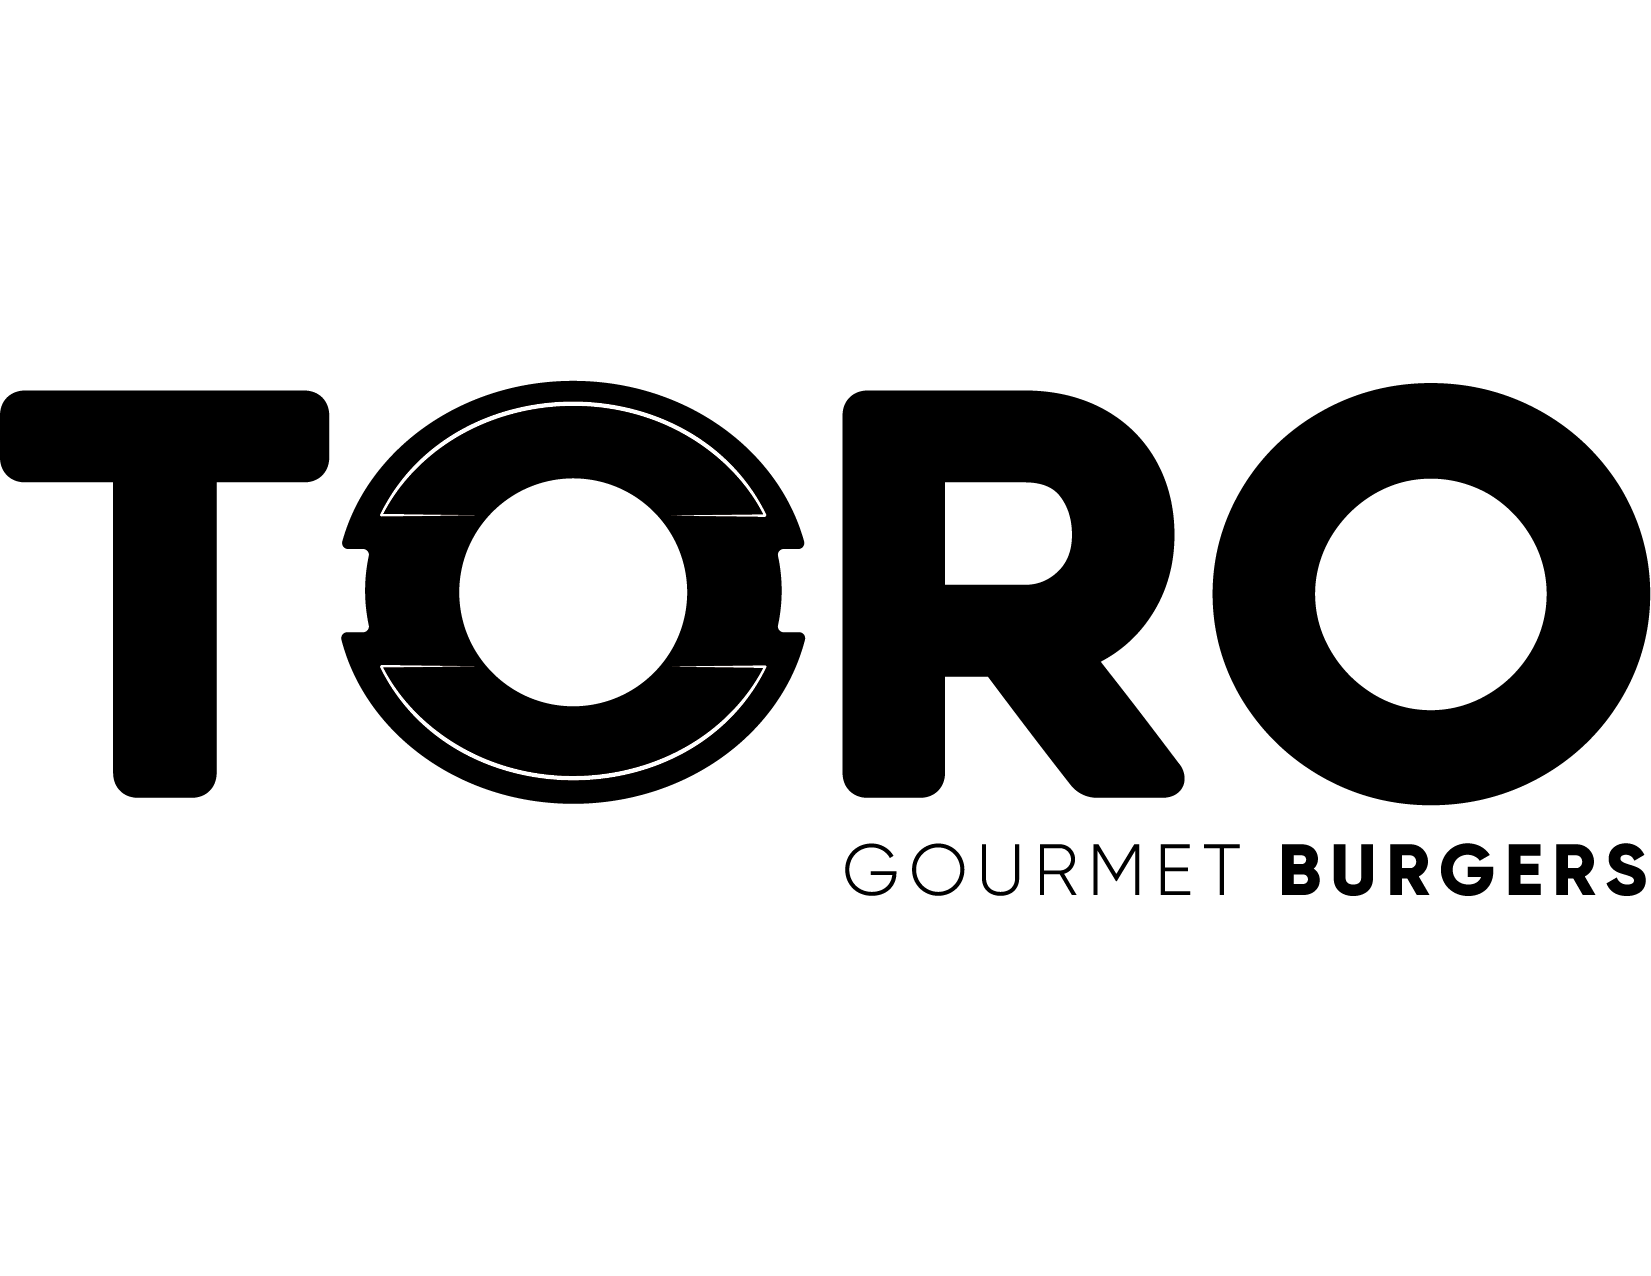 Toro Gourmet Burgers